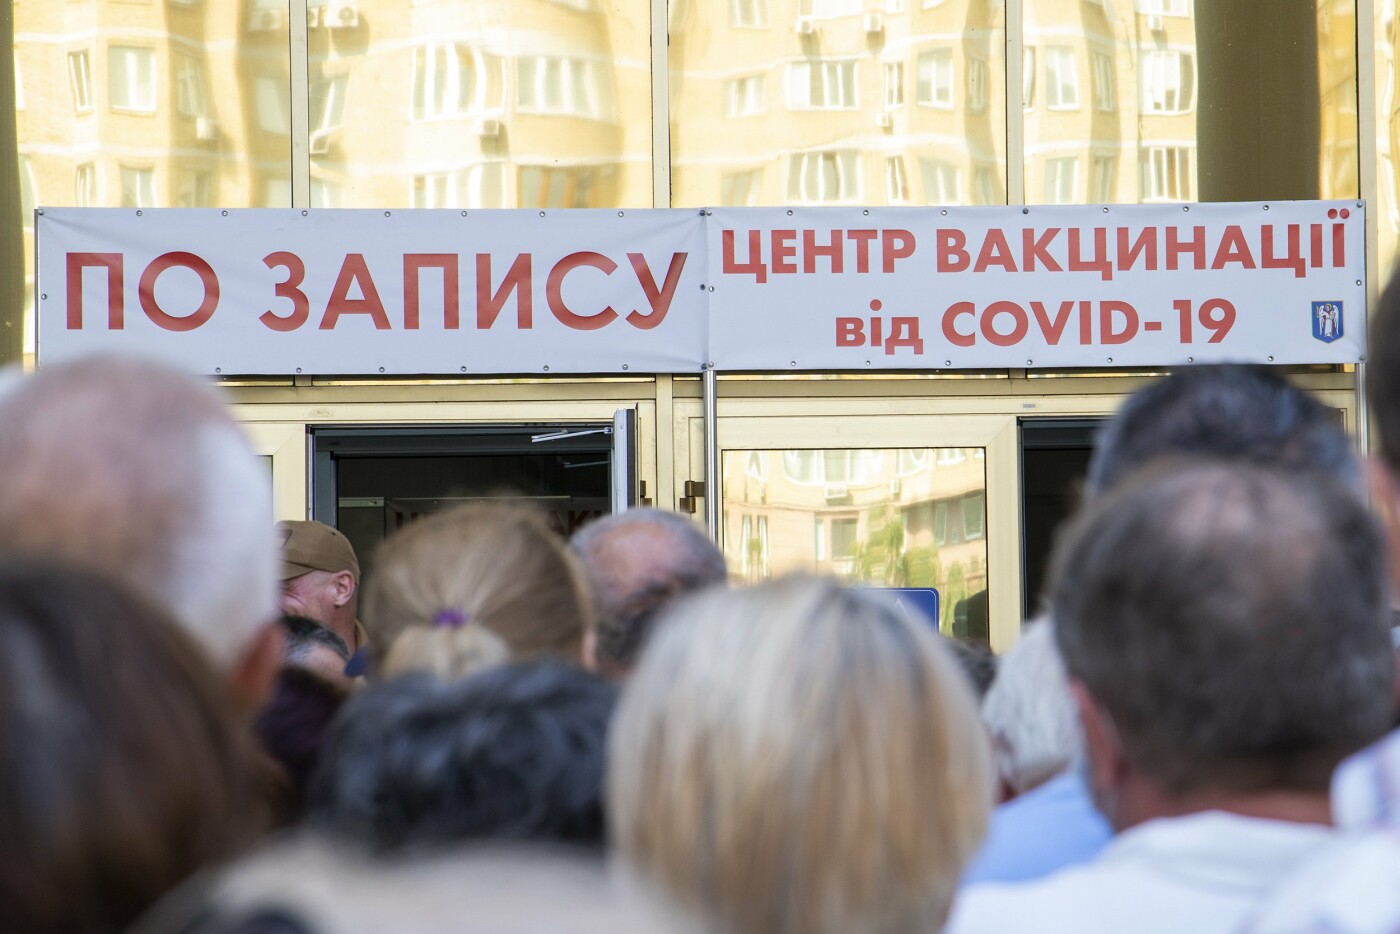 Вакцинация в Киеве: как записаться на прививку и где ее можно получить, - ИНСТРУКЦИЯ